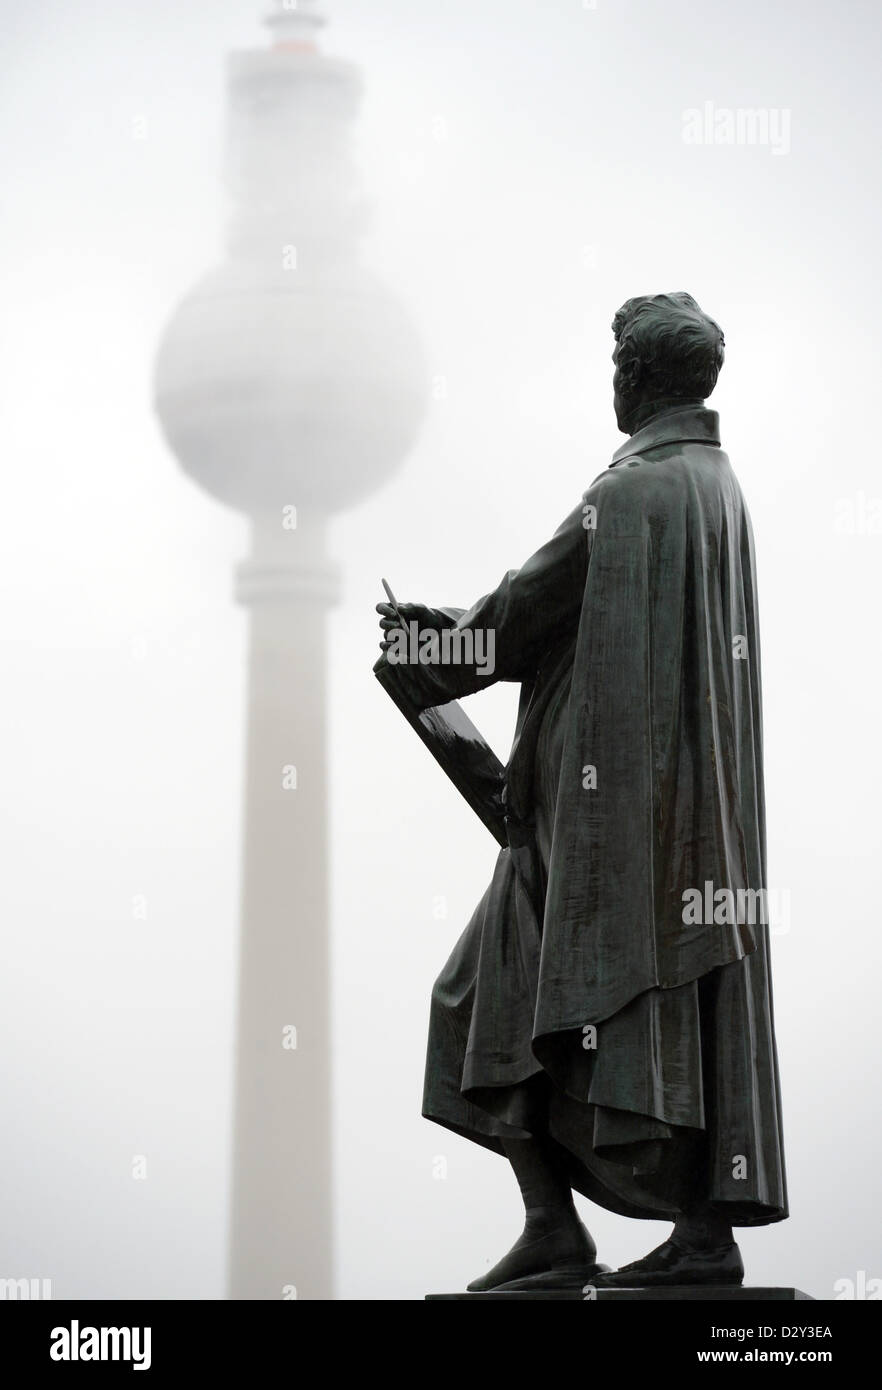 La torre della televisione è raffigurato dietro le nuvole e una scultura di architetto prussiano Karl Friedrich Schinkel a Berlino, Germania, 04 febbraio 2013. Foto: RAINER JENSEN Foto Stock